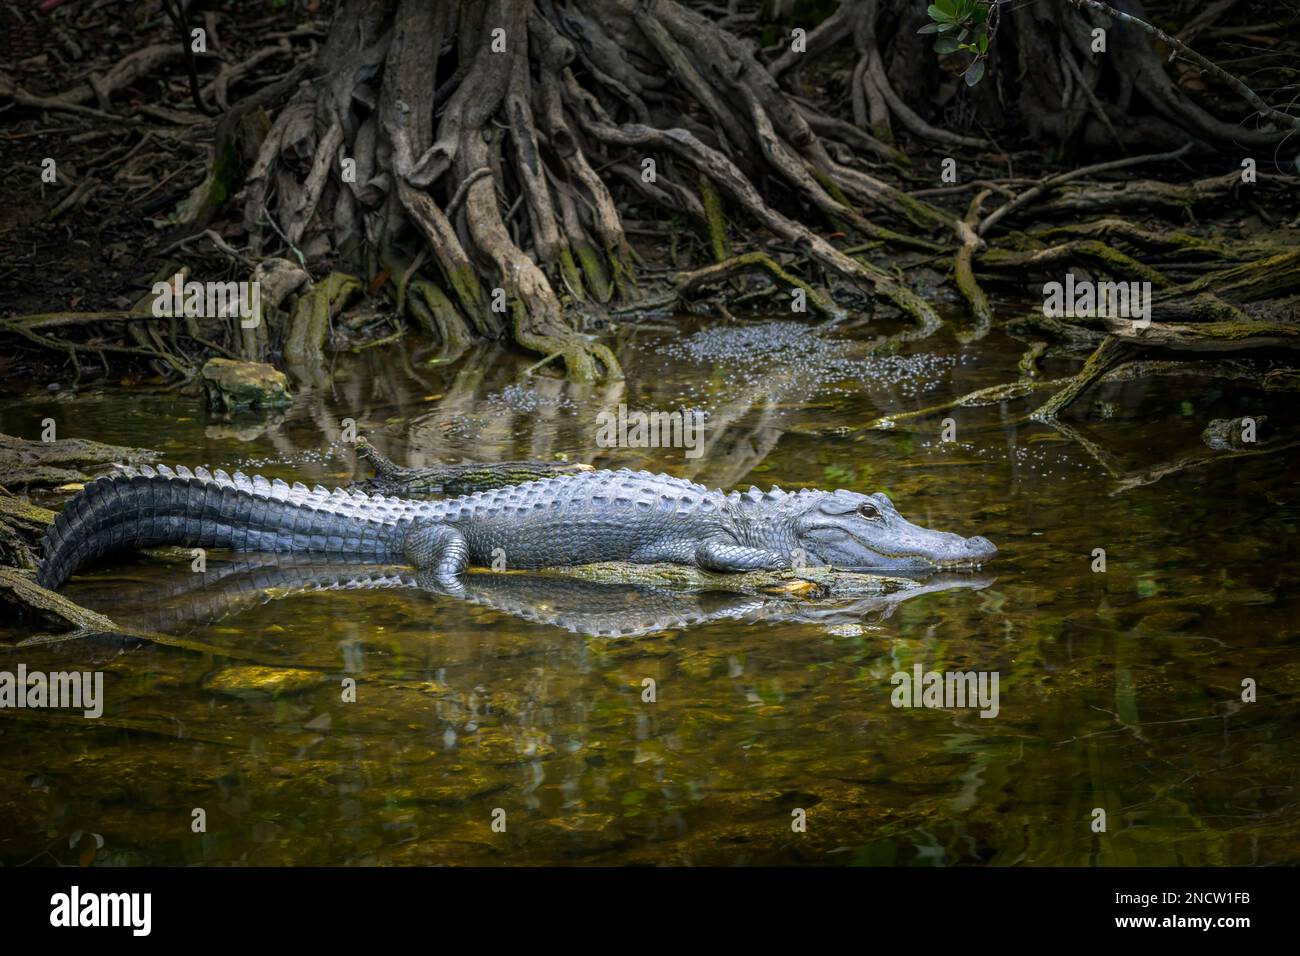 Amerikanischer Alligator (Alligator mississippiensis), der in der Zypressenwurzel im Sumpf liegt, Big Cypress National Reserve, Florida, Vereinigte Staaten. Stockfoto